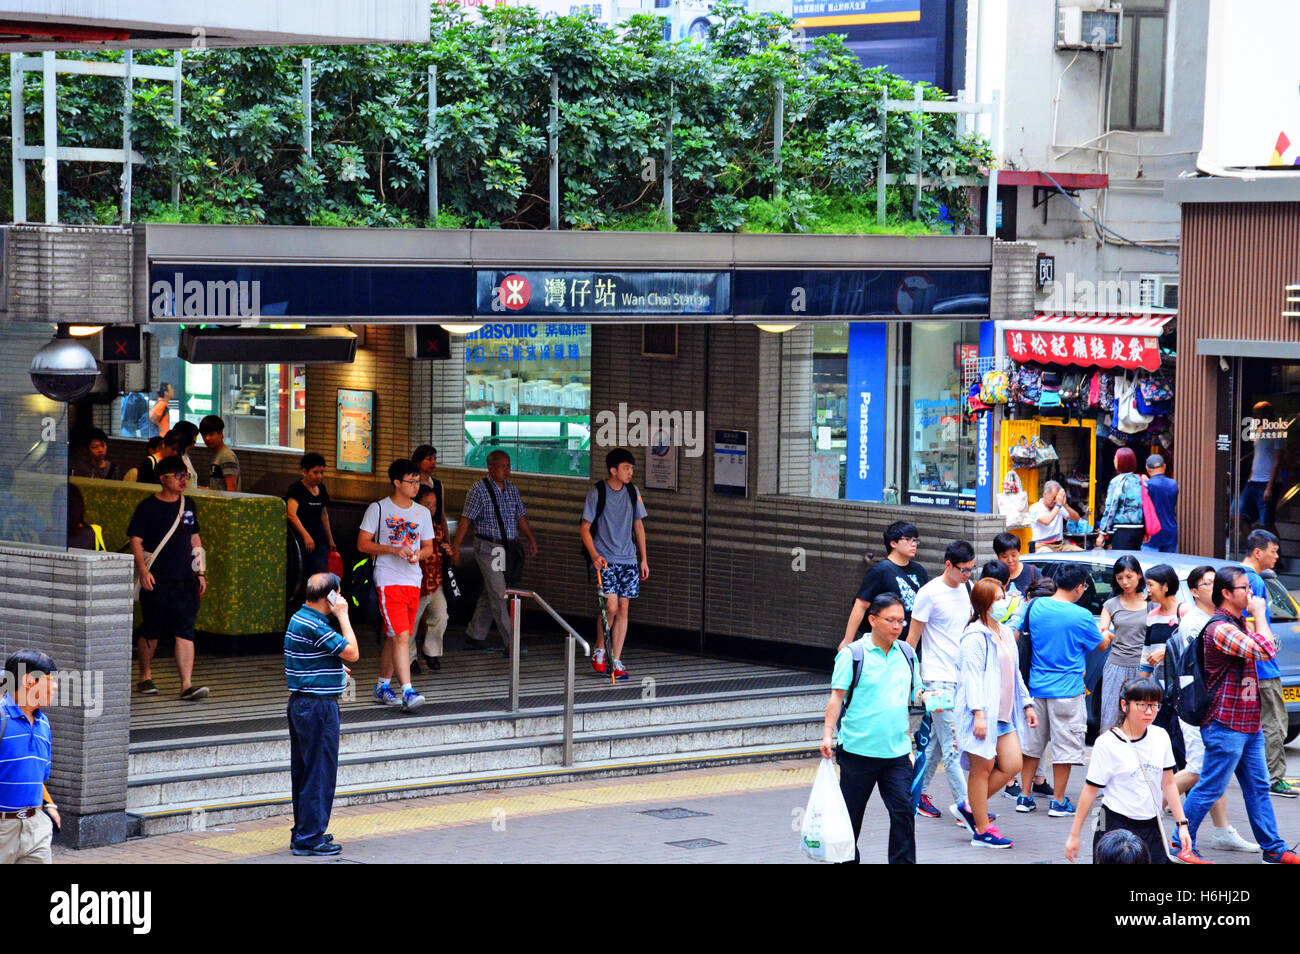 Entrée de l'île de Hong Kong Chine métro Banque D'Images